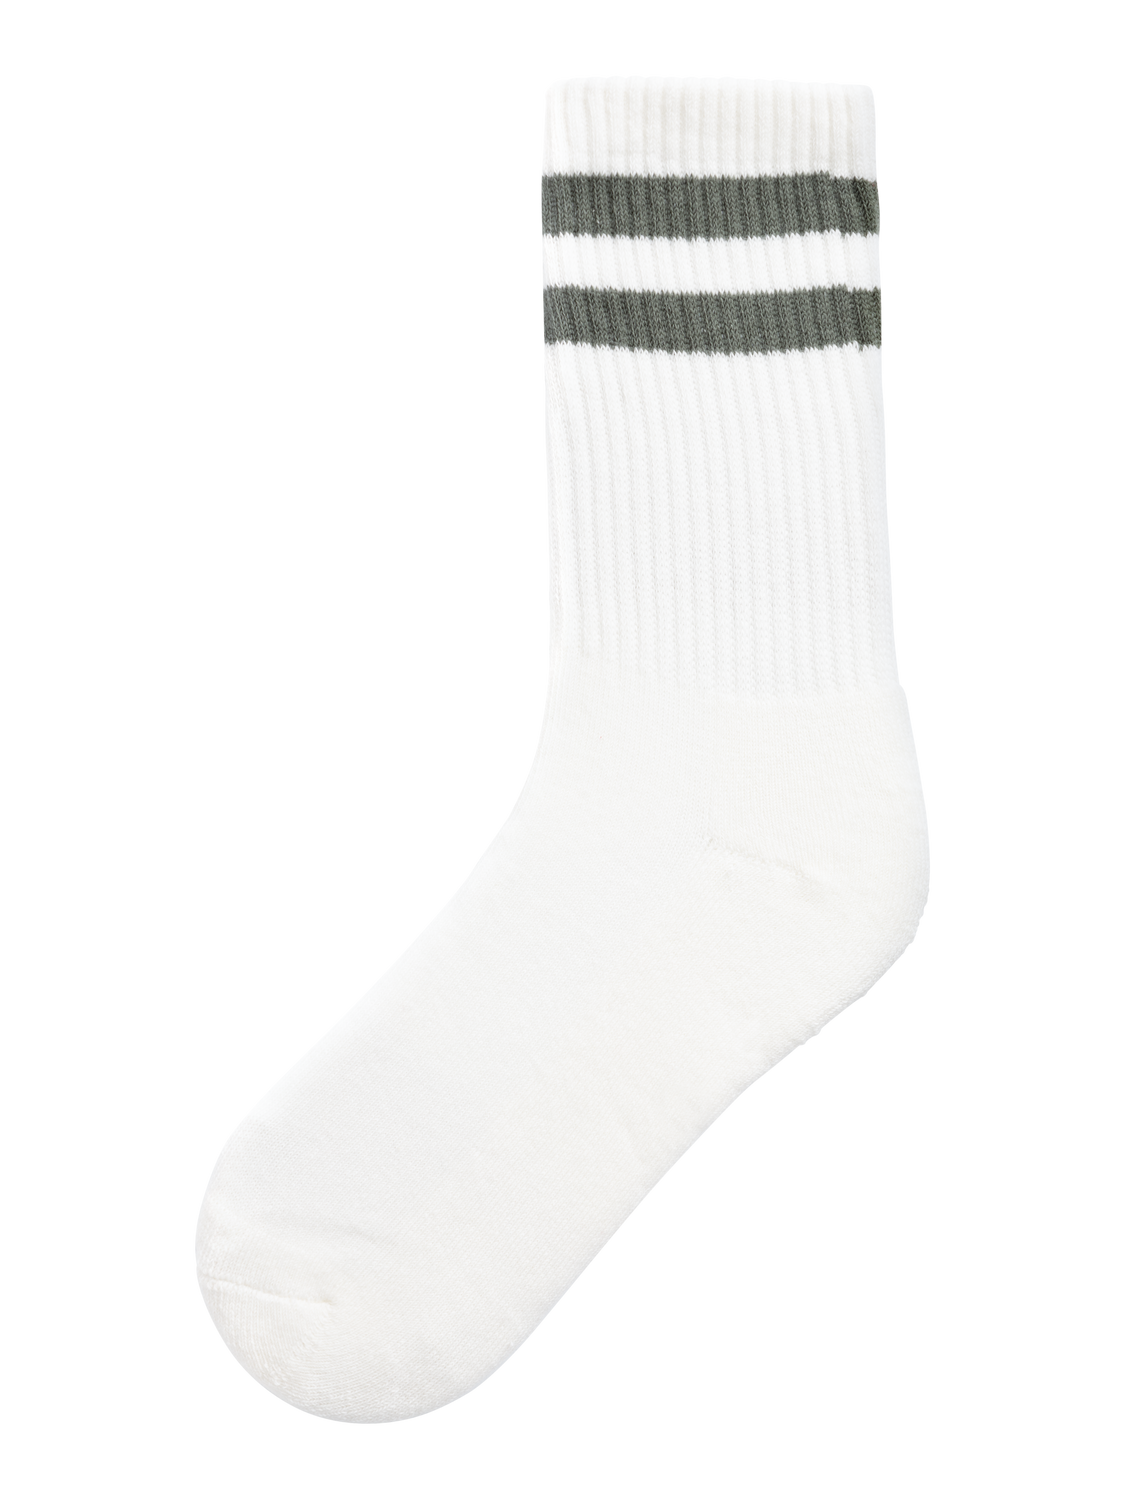 NKMJANS Socks - Bright White